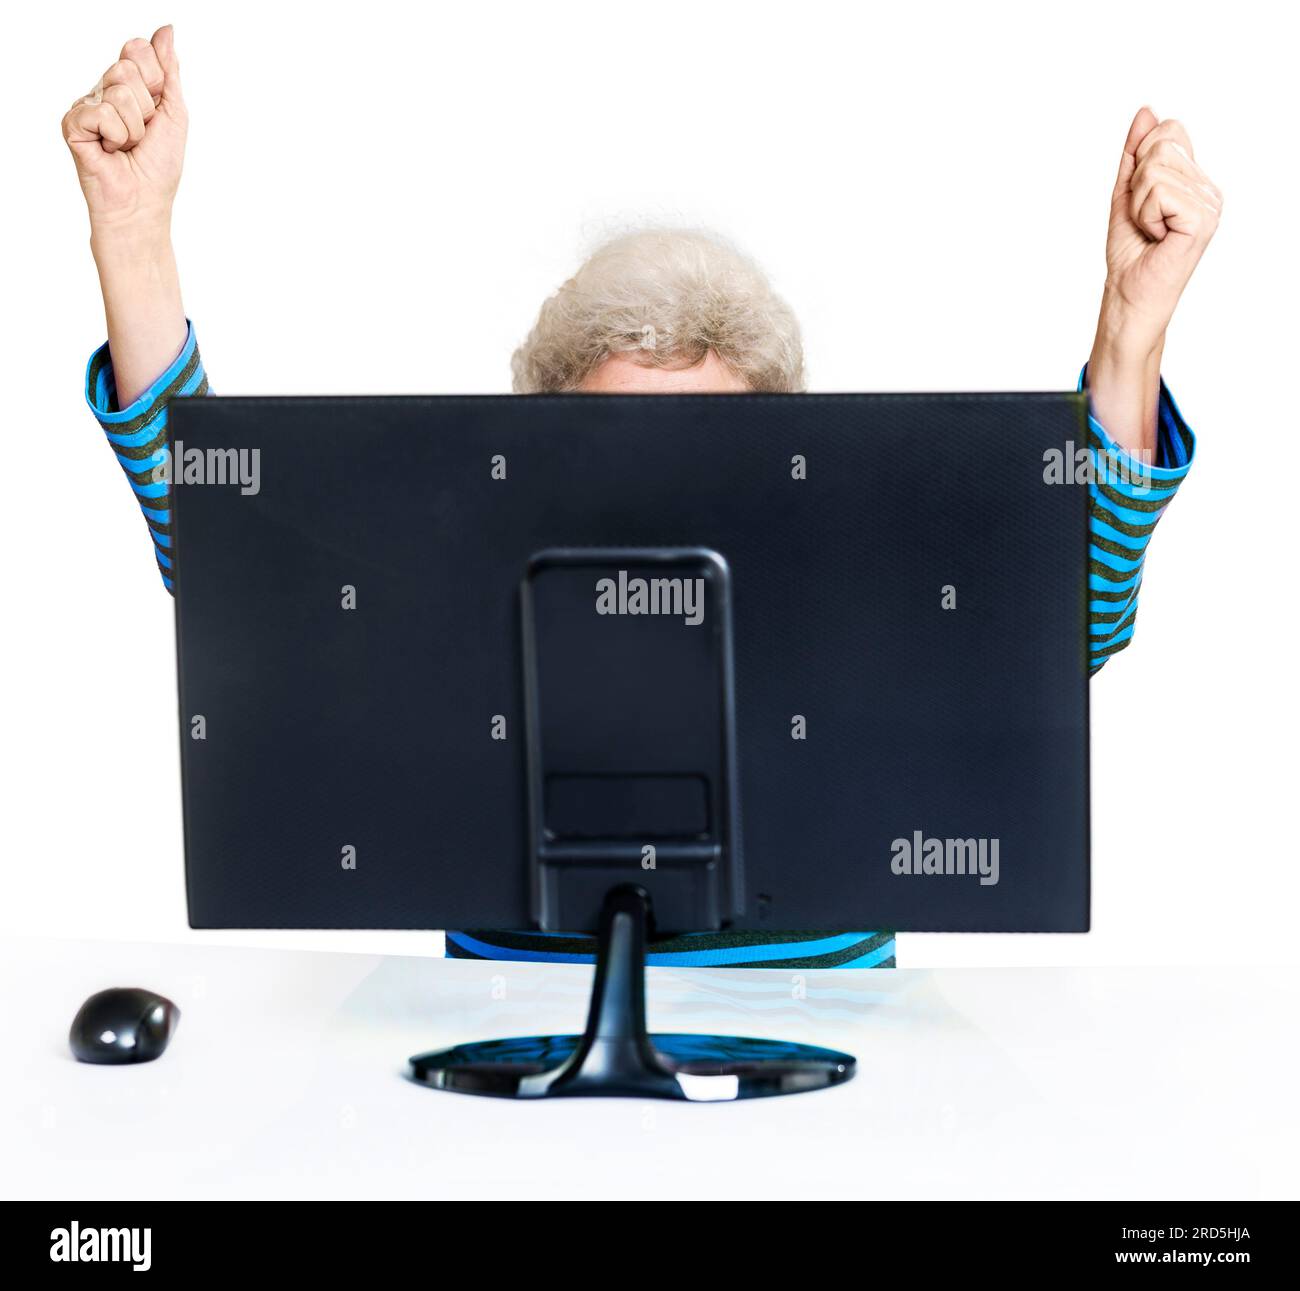 Eine Geste des Erfolgs, des Sieges. Senior versteckt hinter einem Computermonitor. Fröhlich mit erhobenen Händen. Weißer Hintergrund Stockfoto